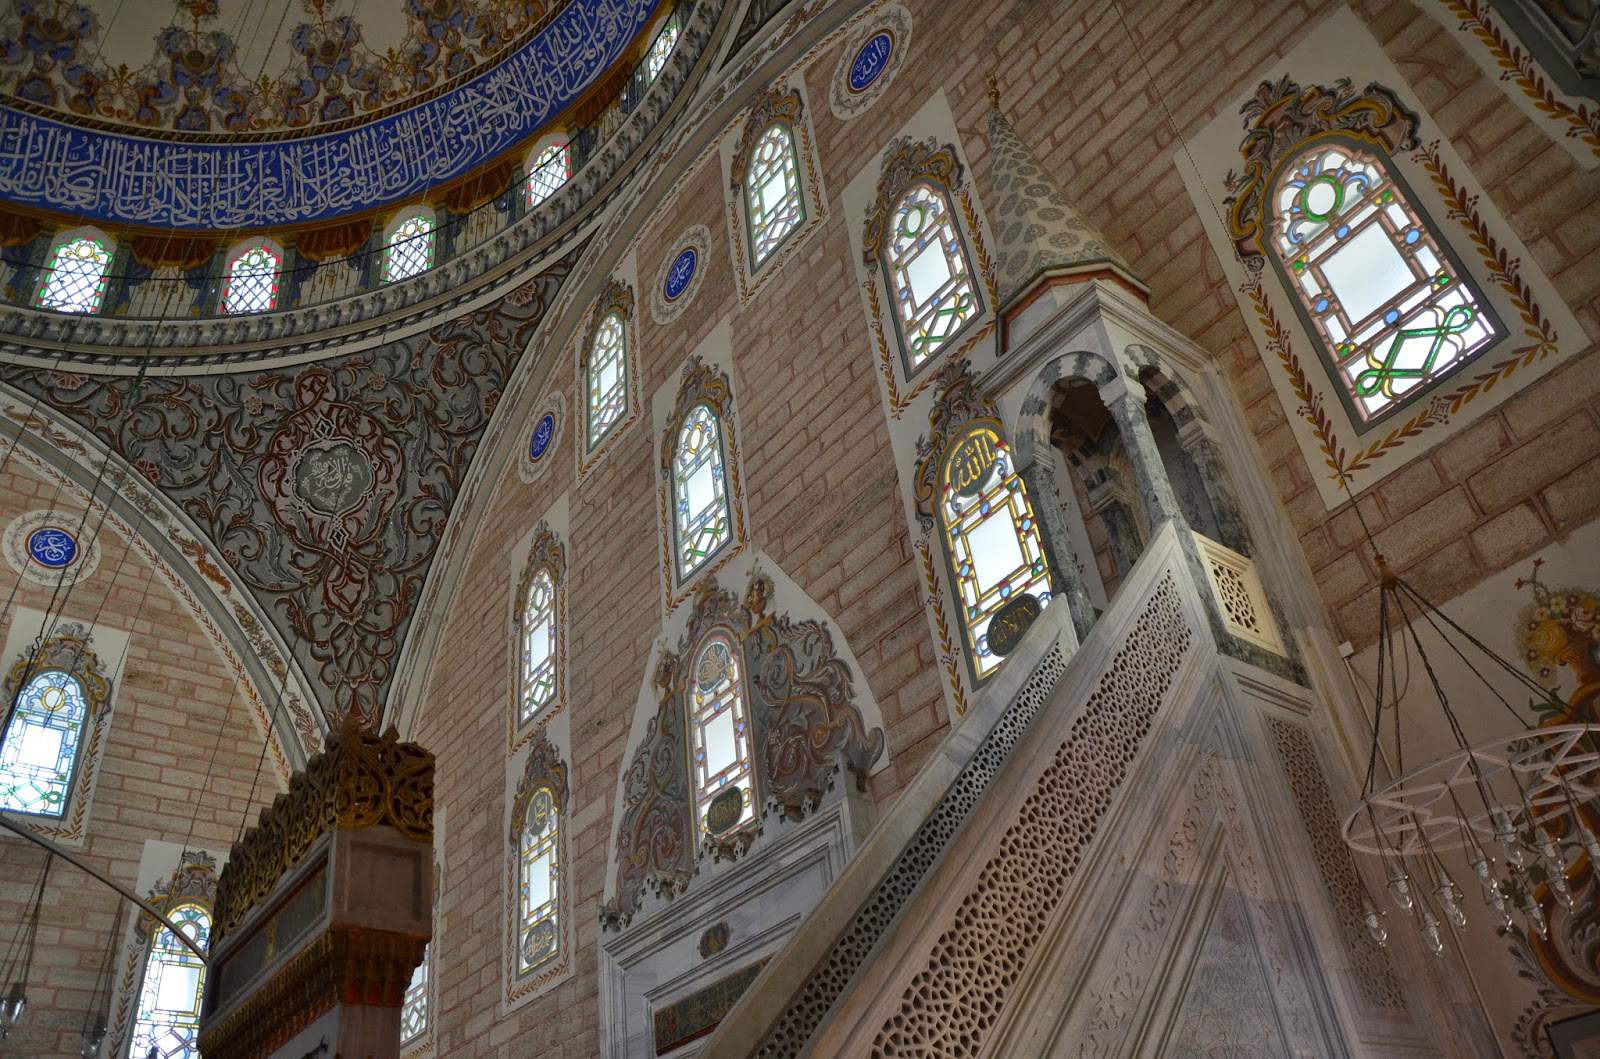 Minbar and qibla wall at the Bayezid II Mosque